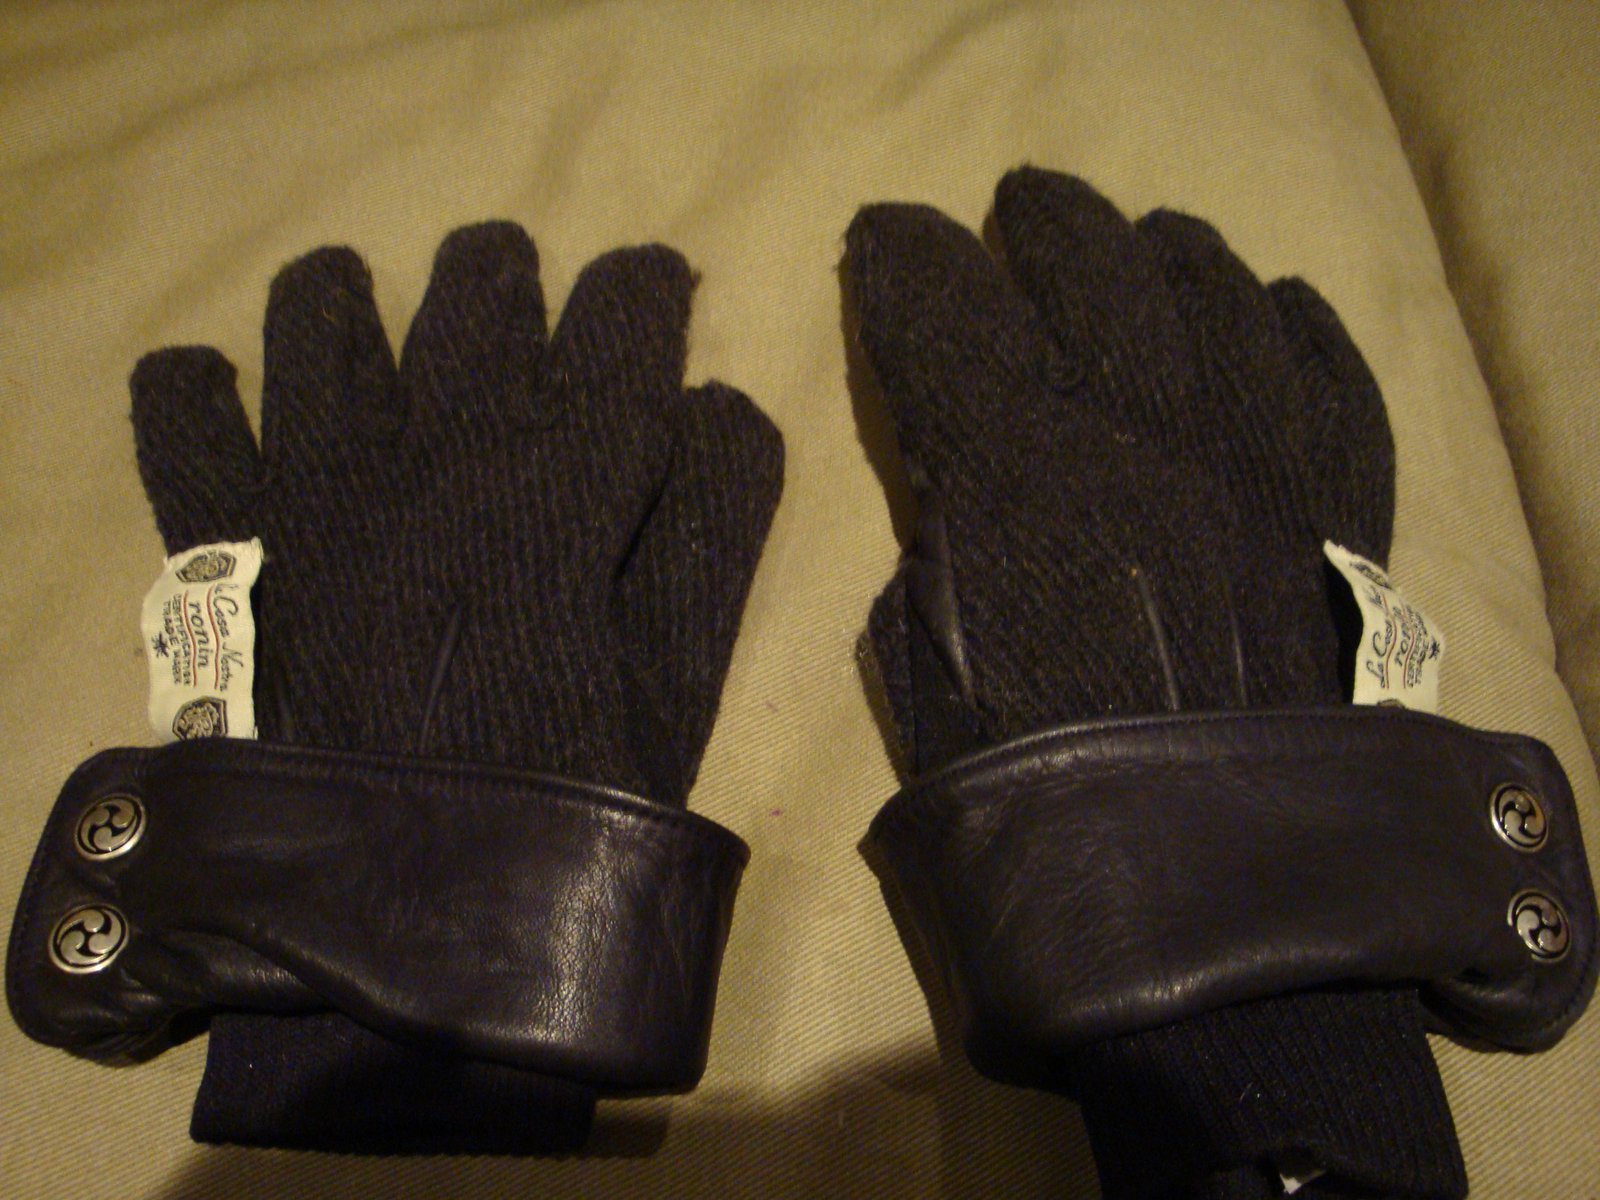 Ronin gloves